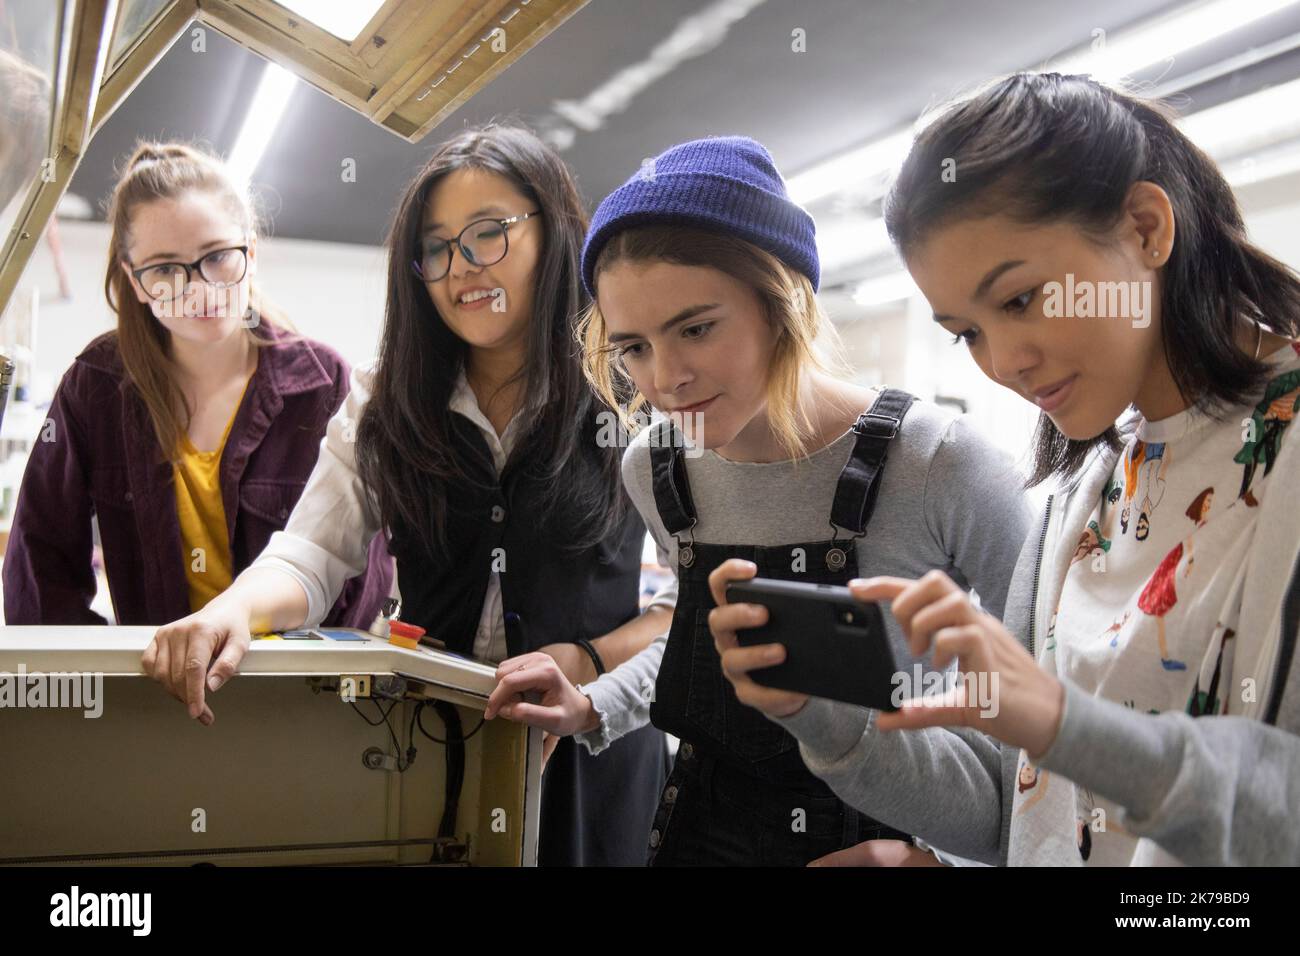 Estudiantes que usan un smartphone para tomar fotografías en un estudio técnico Foto de stock